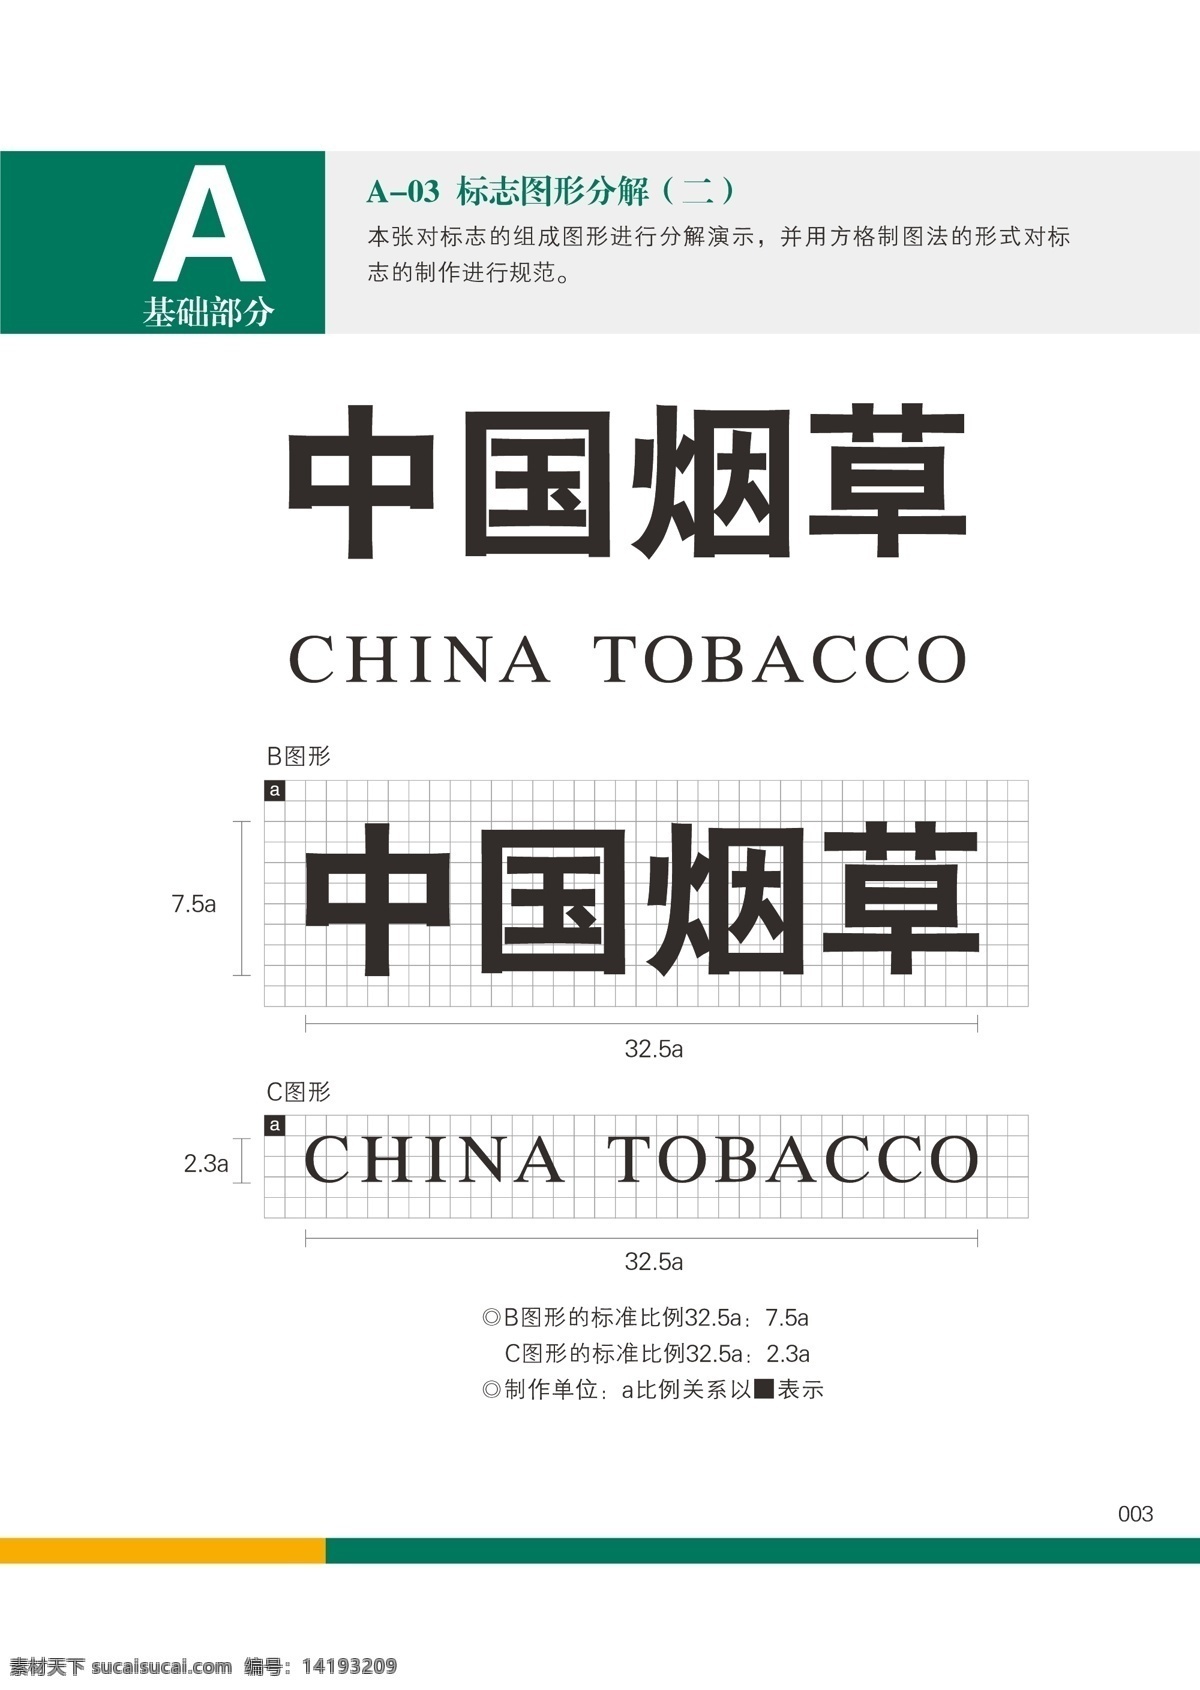 中国 烟草 vi 标志 标准 墙体 矢量图 中国烟草 复烤厂